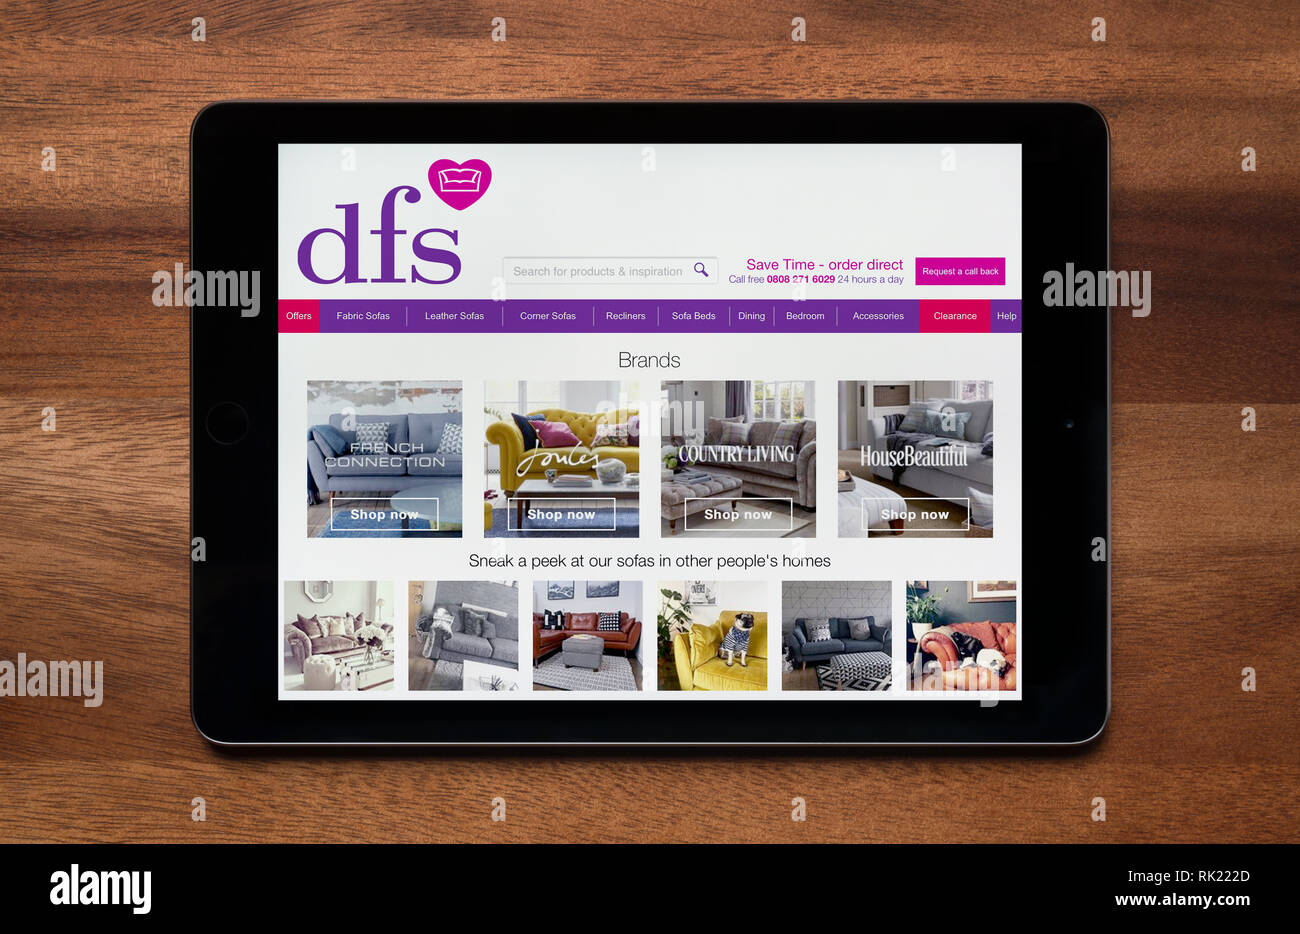 Le site internet de la dsv est vu sur une tablette iPad, qui repose sur une table en bois (usage éditorial uniquement). Banque D'Images